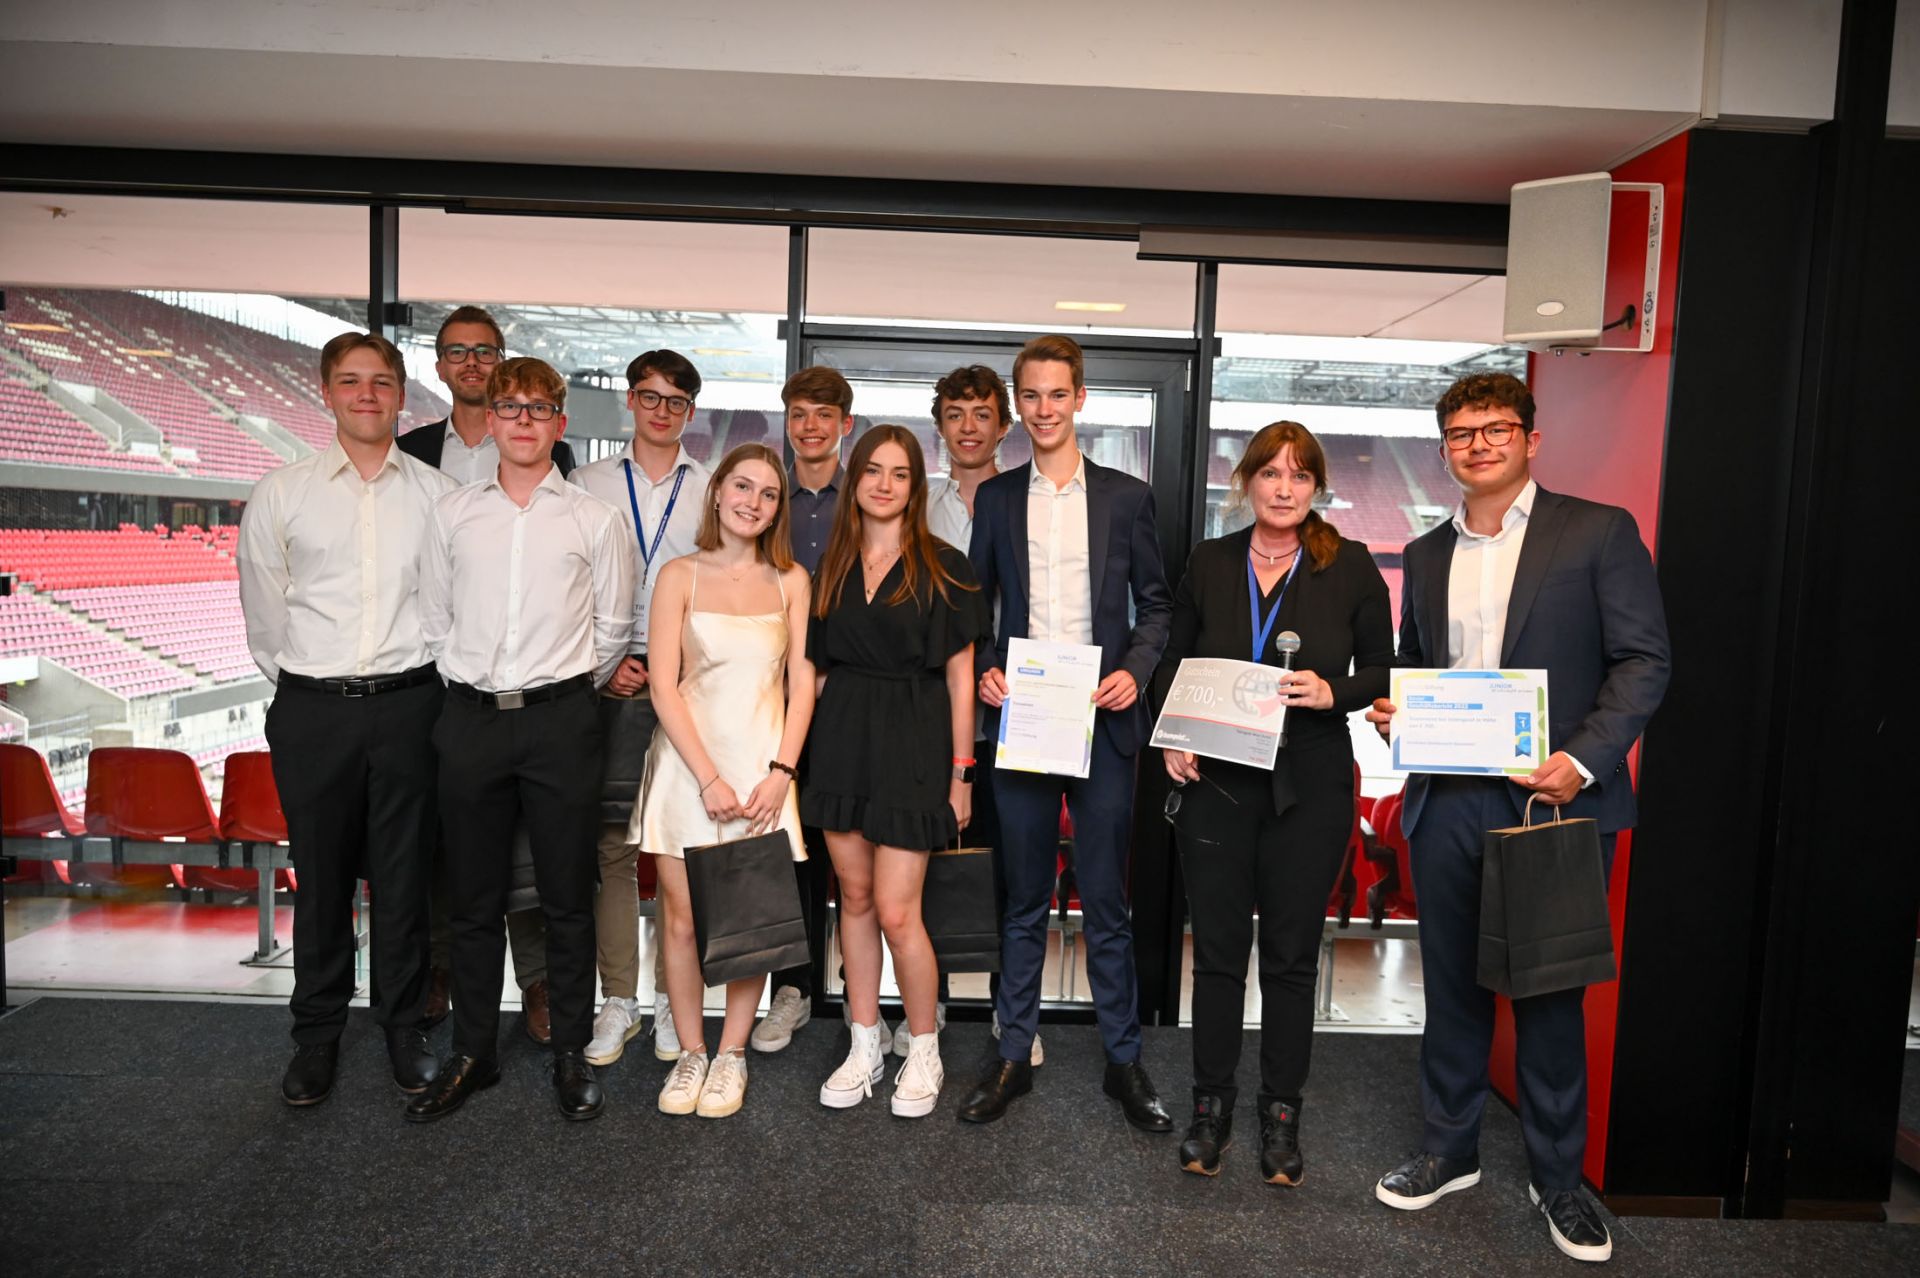 Zu sehen ist eine Schülerfirma bestehend aus 10 Jugendlichen, die den Deloitte-Sonderpreis "Bester Geschäftsbericht" von der Deloittevertretung erhalten